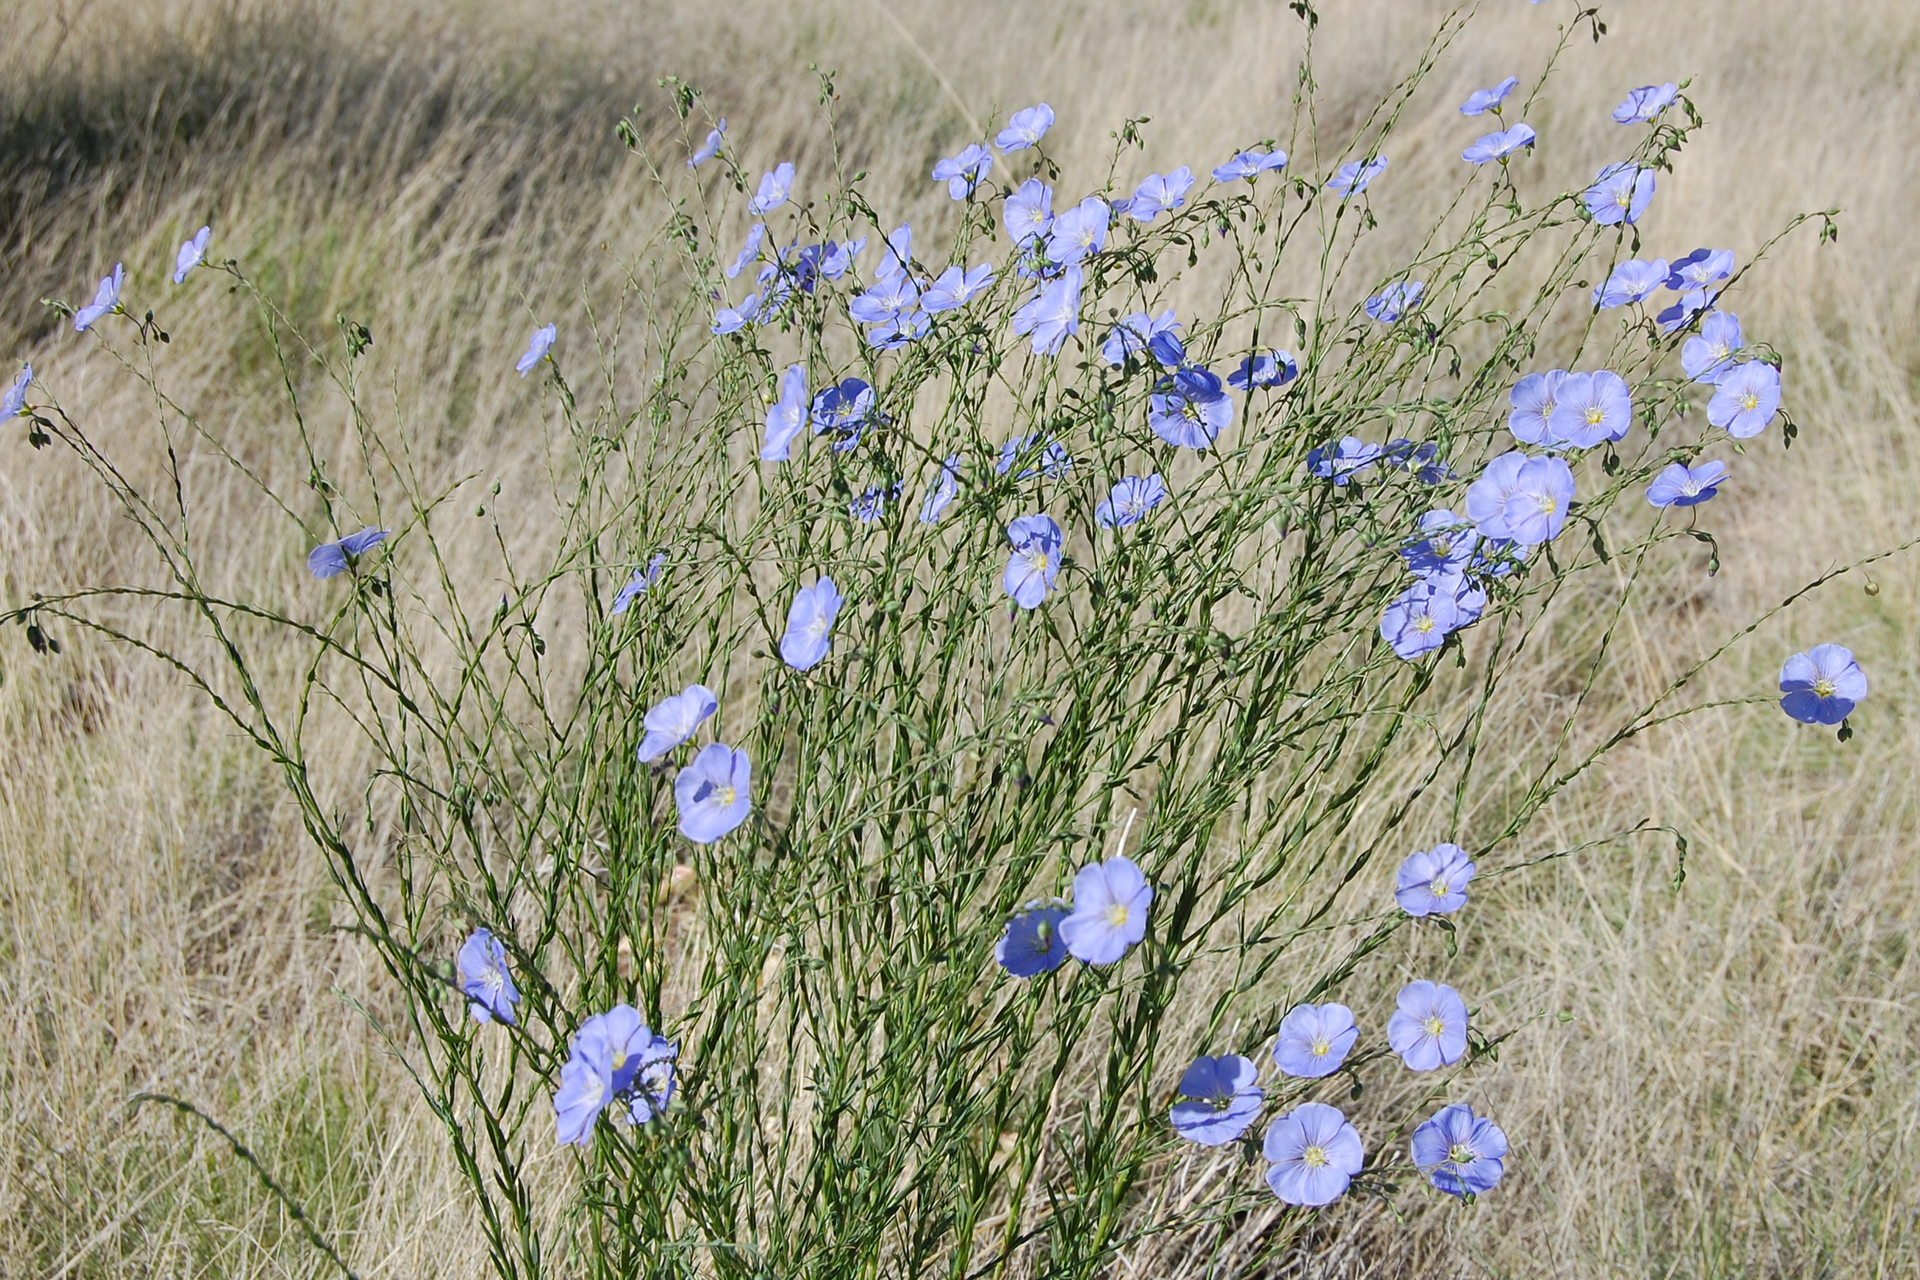 Fotografia przedstawia pędy lnu z błękitnymi kwiatami na szczycie. Len rośnie wśród zeschniętej trawy. Jego łodygi są cieniutkie, liście wąskie, krótkie. Len jest rośliną jednoroczną.